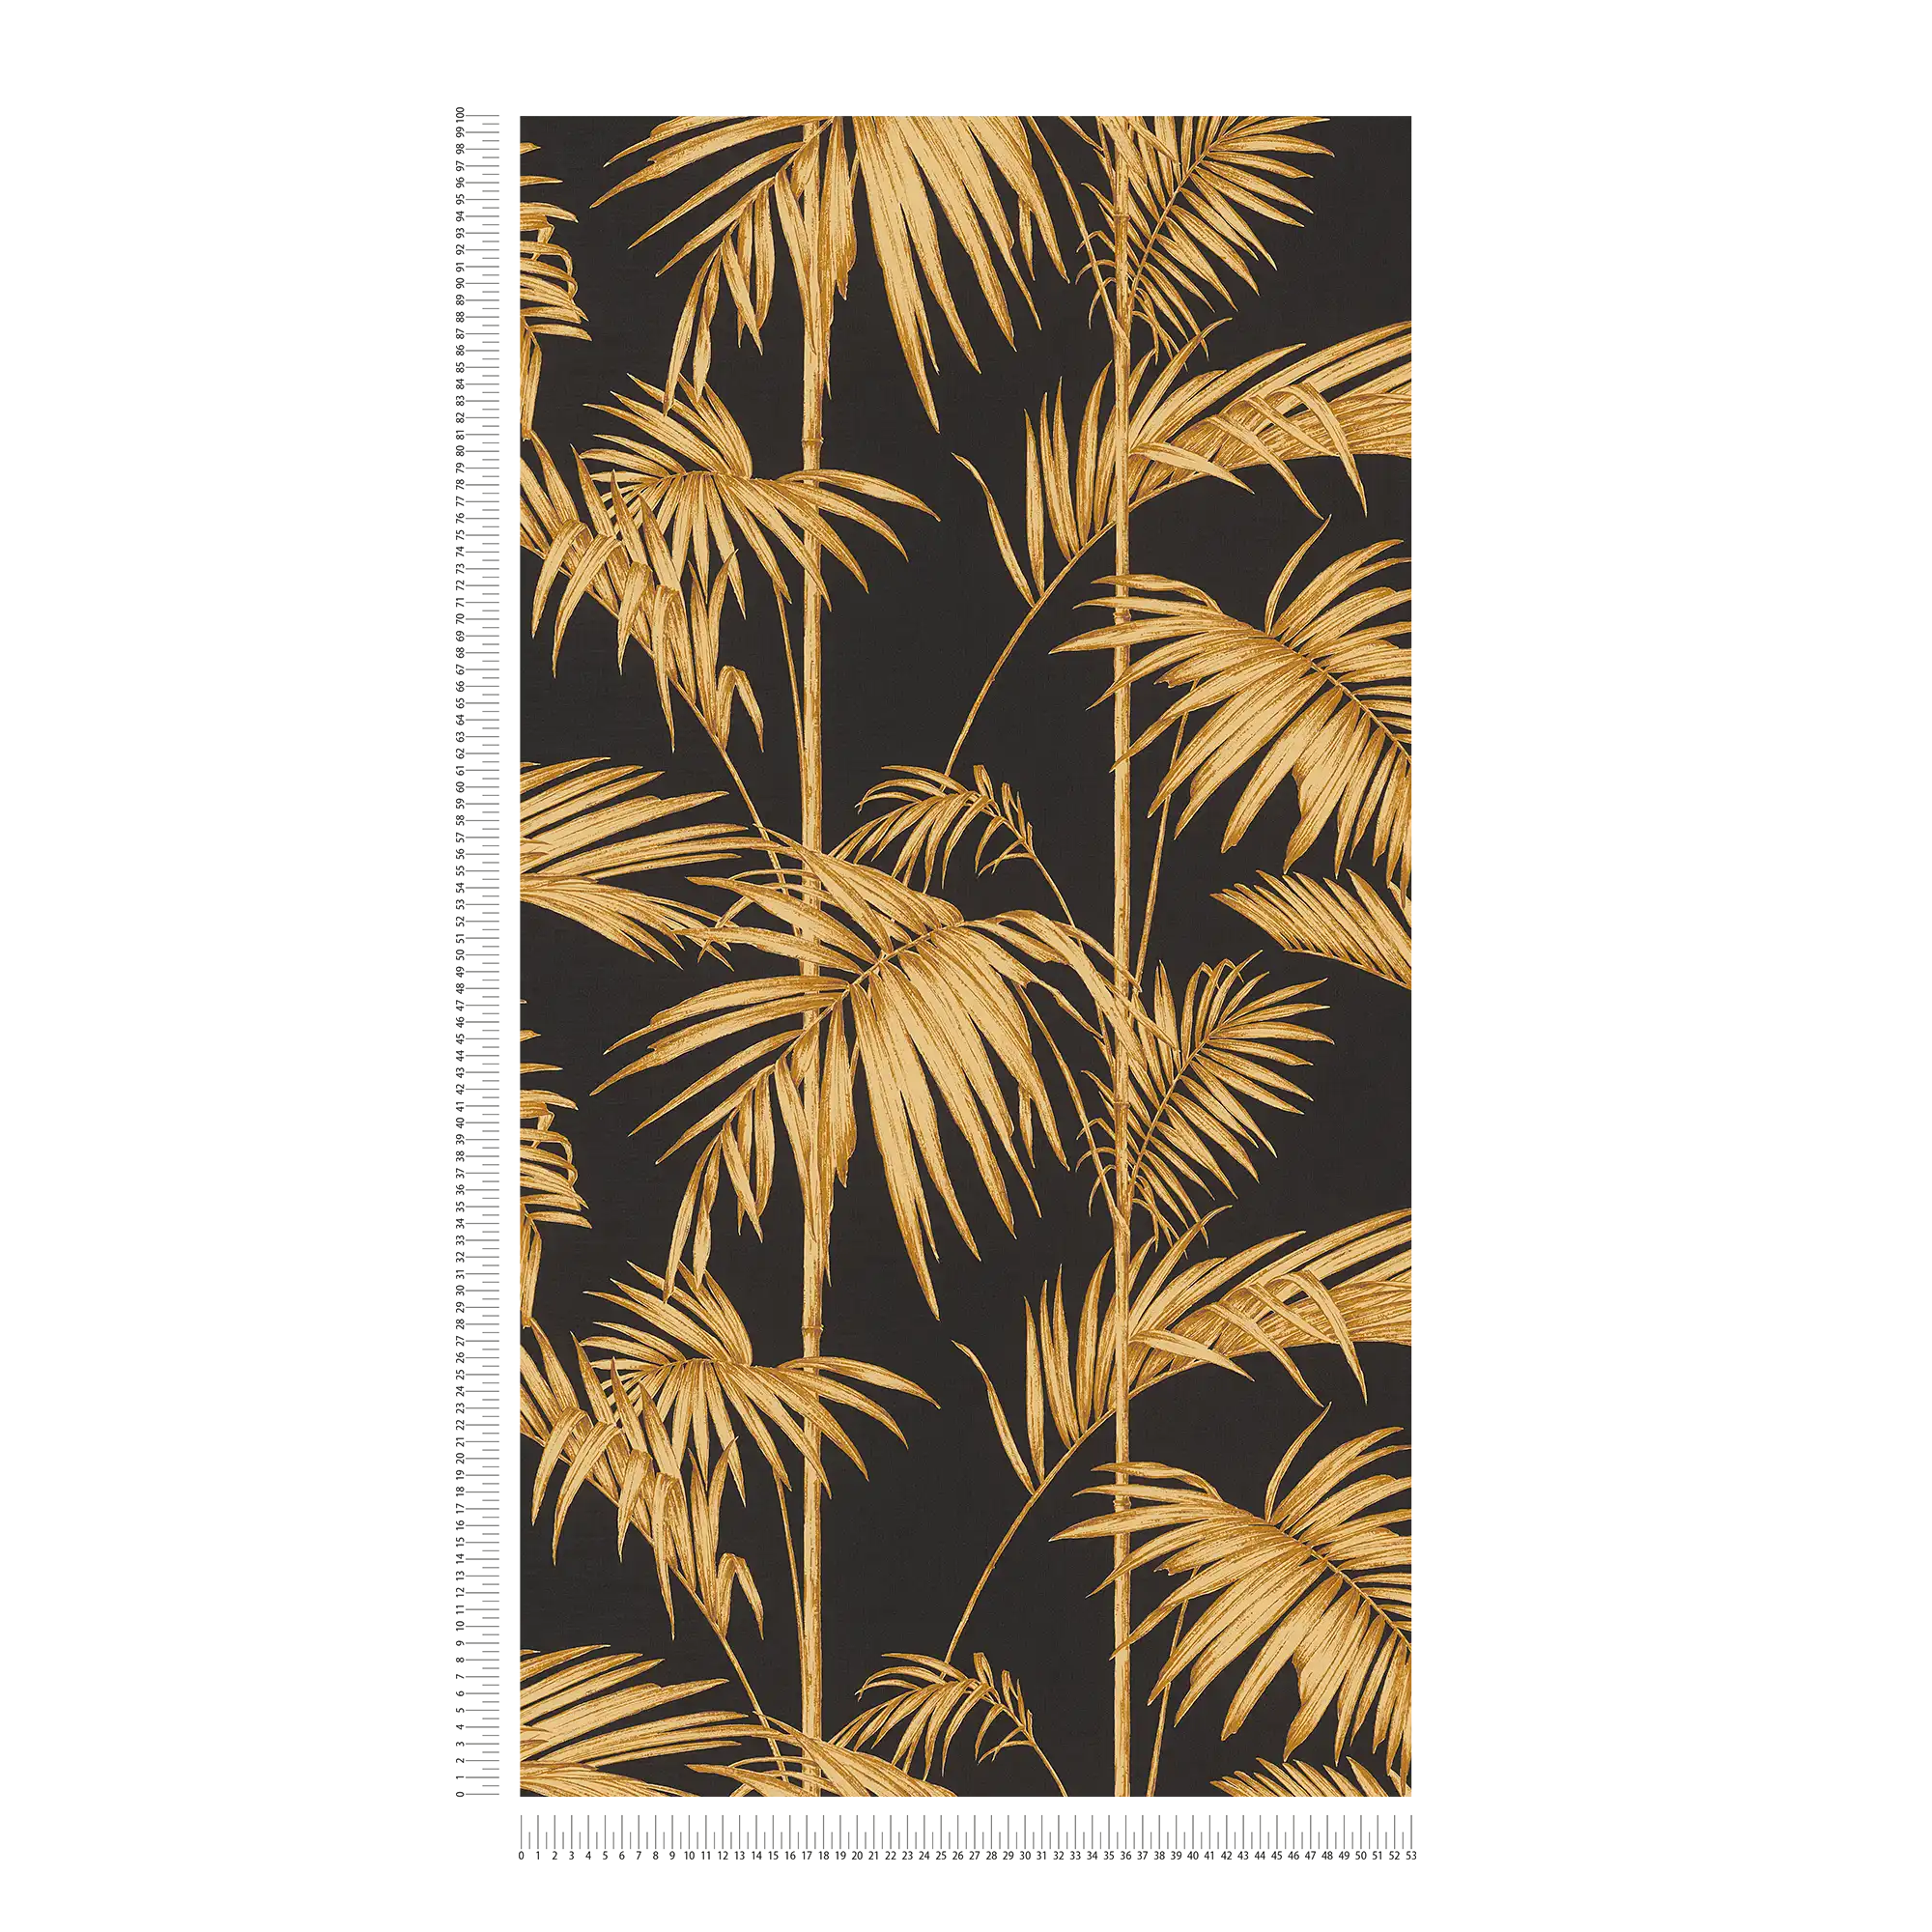             Papier peint naturel feuilles de palmier, bambou - or, noir, orange
        